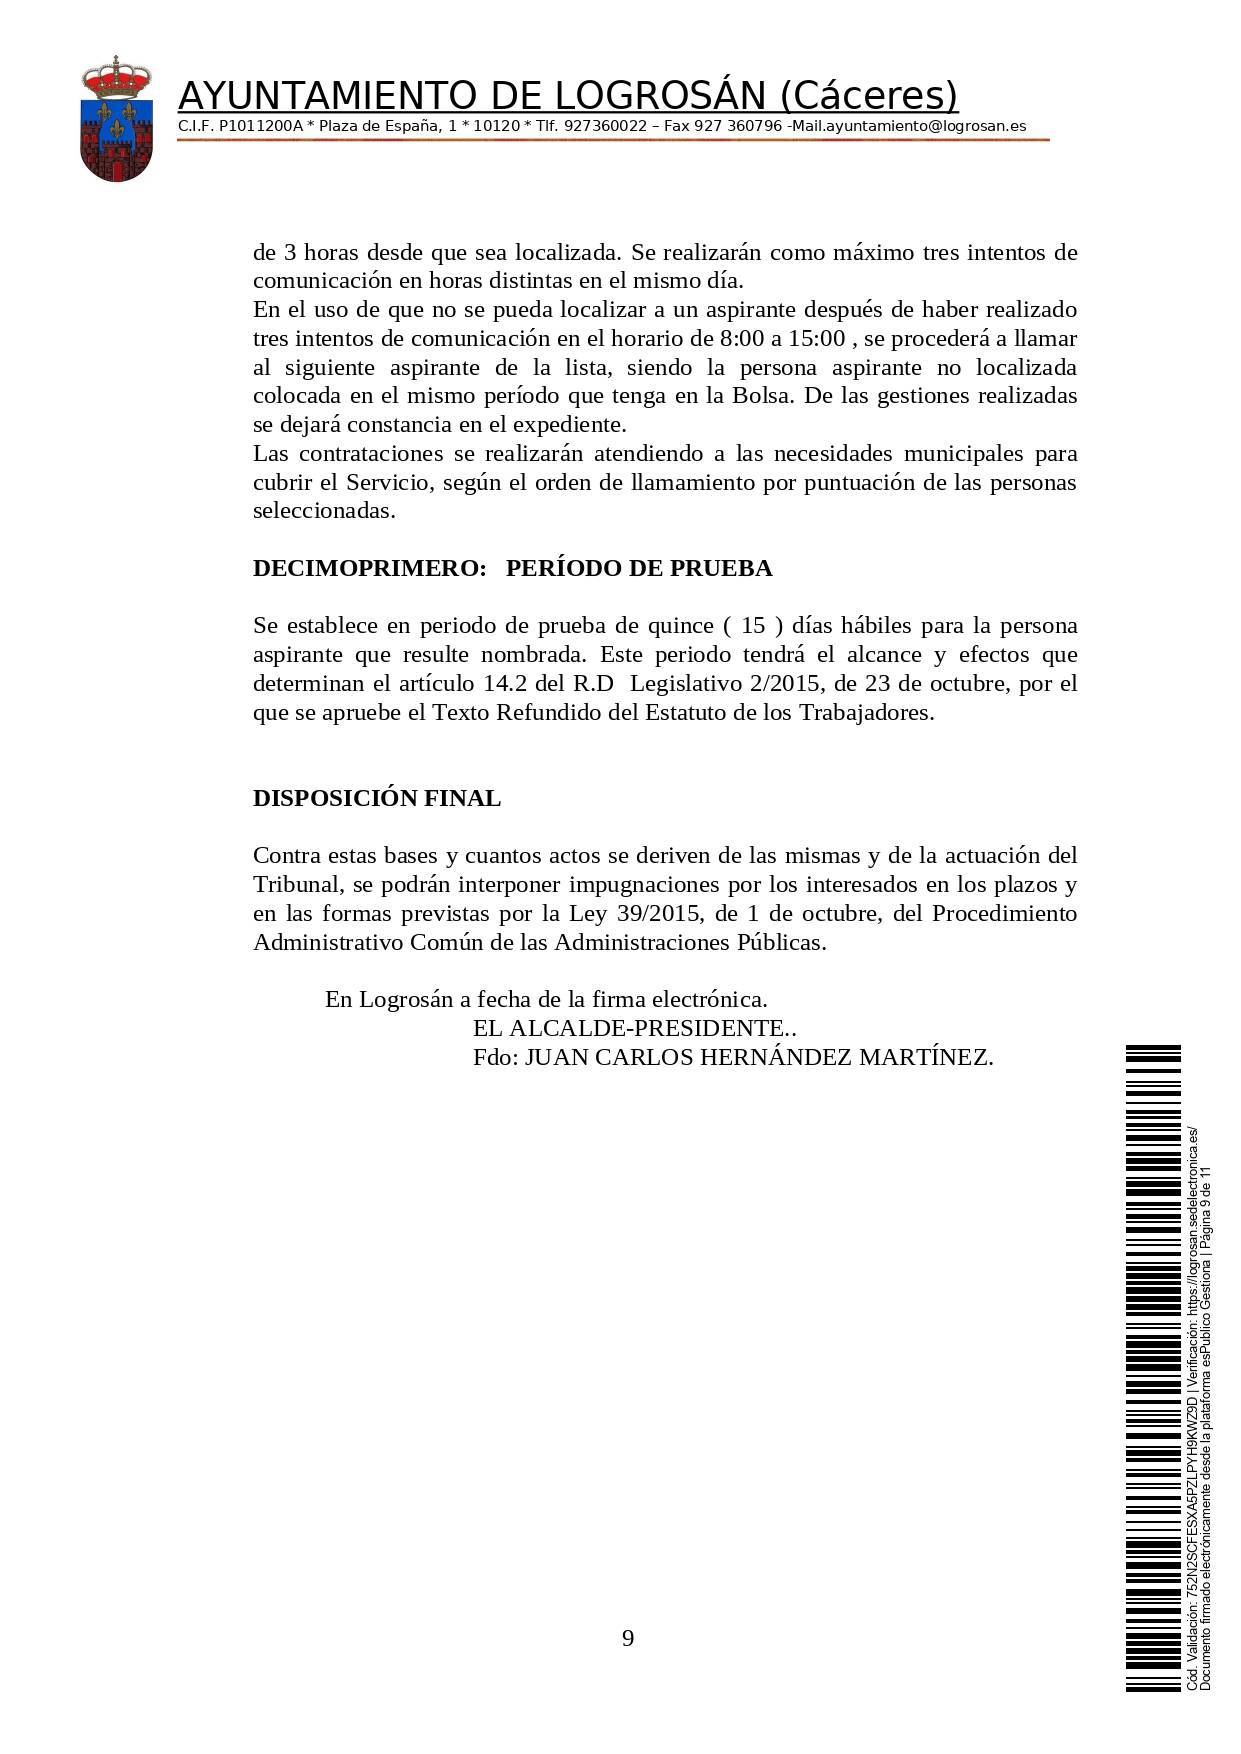 Bolsa de una alguacil (2021) - Logrosán (Cáceres) 9